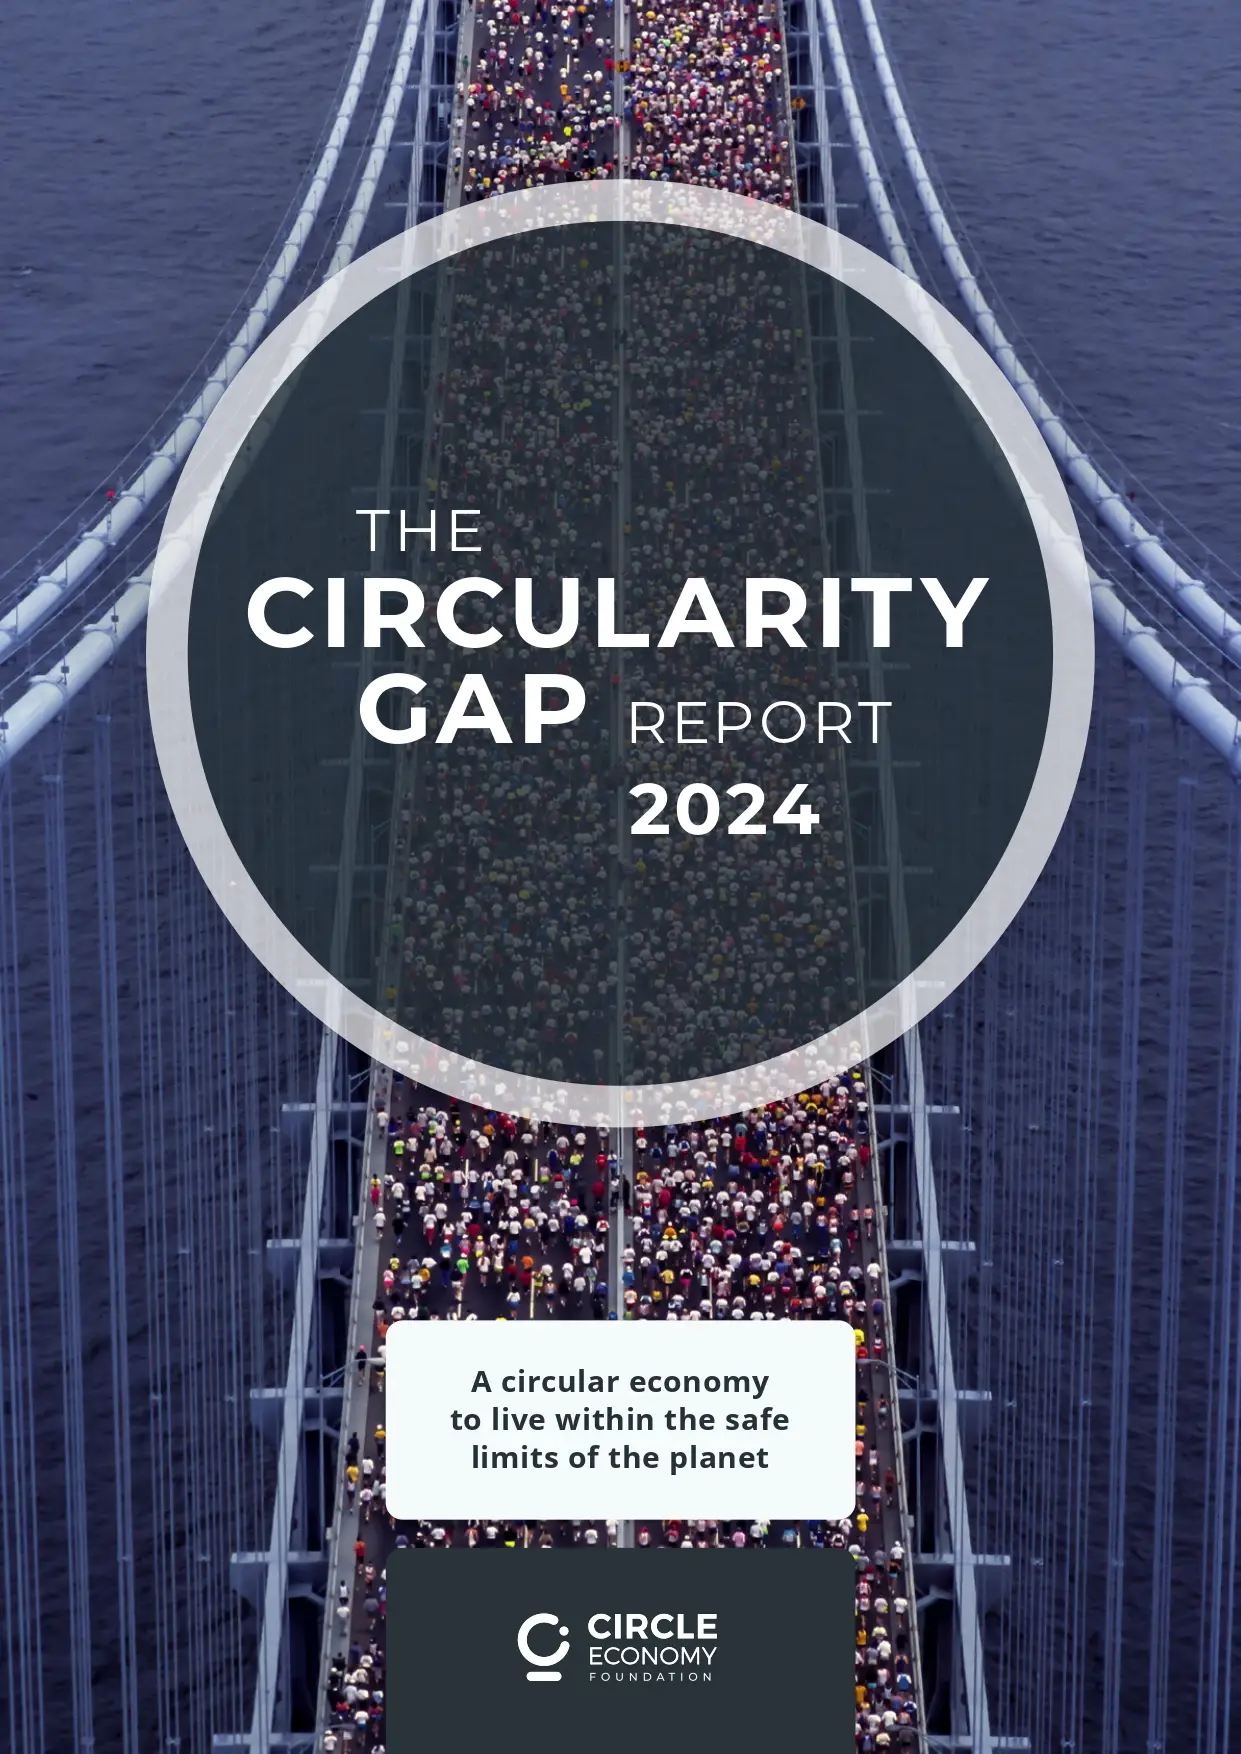 The Circularity Gap Report 2024